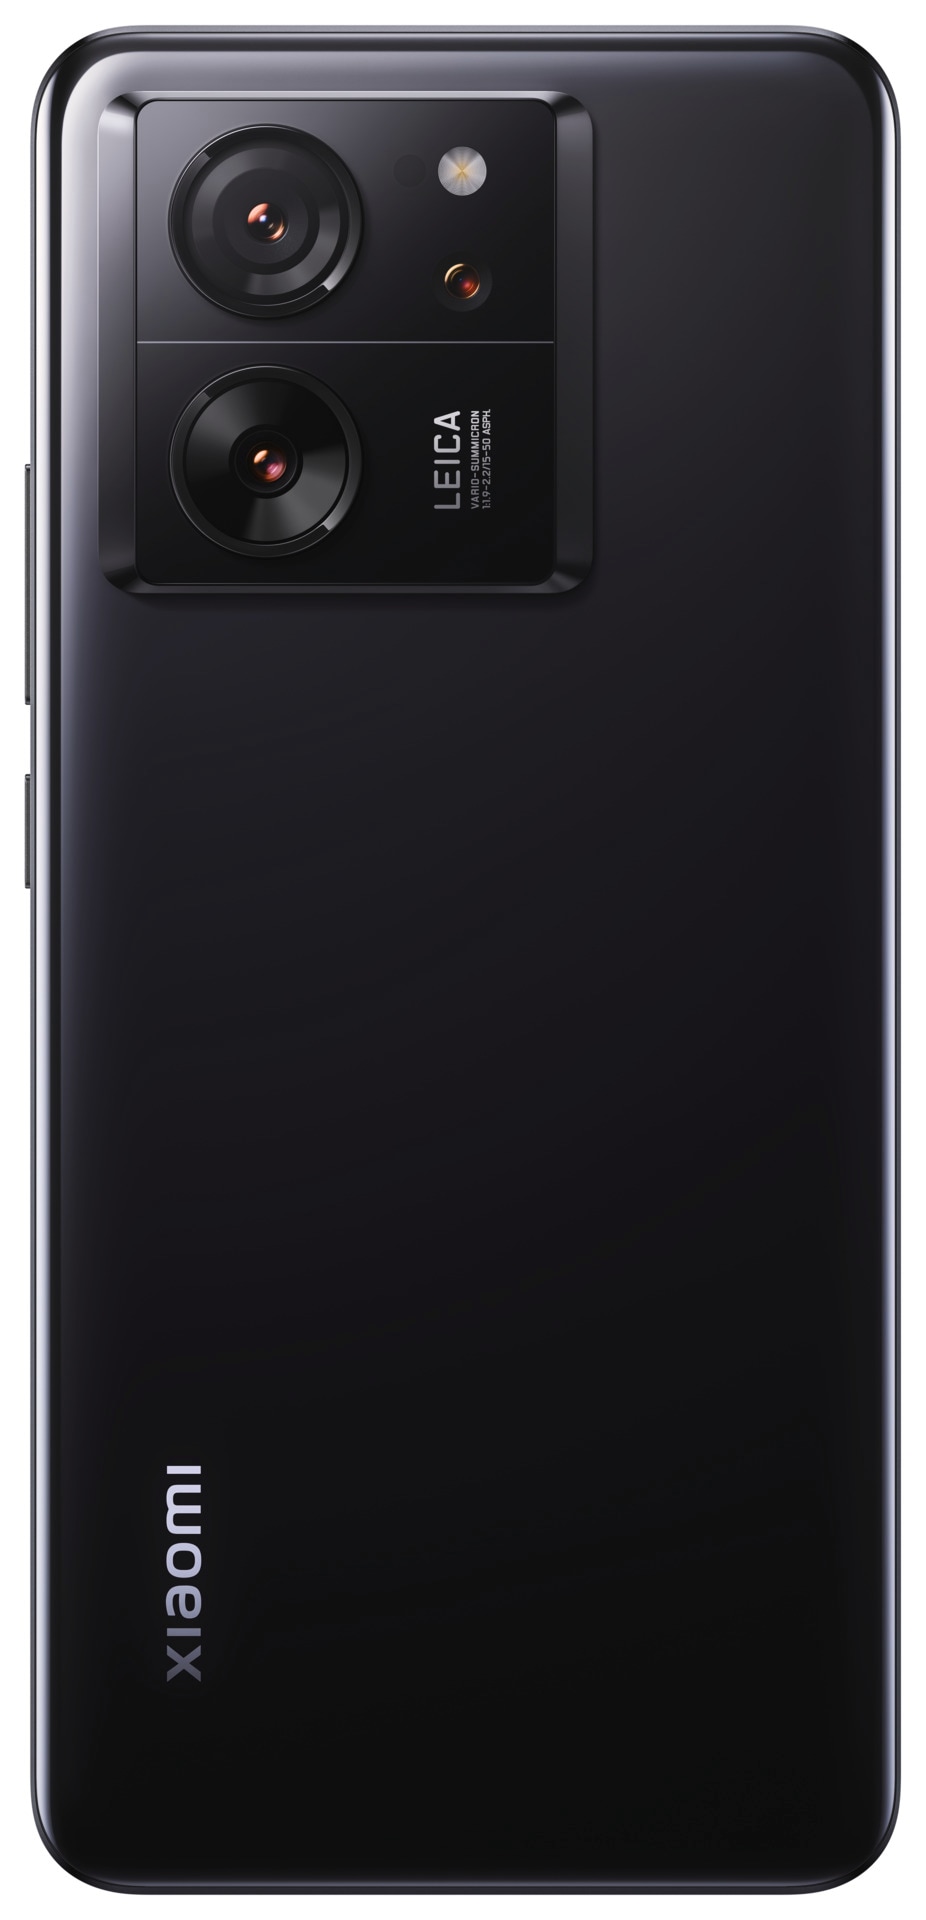 Xiaomi Smartphone »13T Pro mit 12GB RAM + 512GB internem Speicher«, Schwarz, 16,94 cm/6,67 Zoll, 512 GB Speicherplatz, 50 MP Kamera, 16,94 cm (6,67 Zoll) 144 Hz CrystalRes AMOLED Display